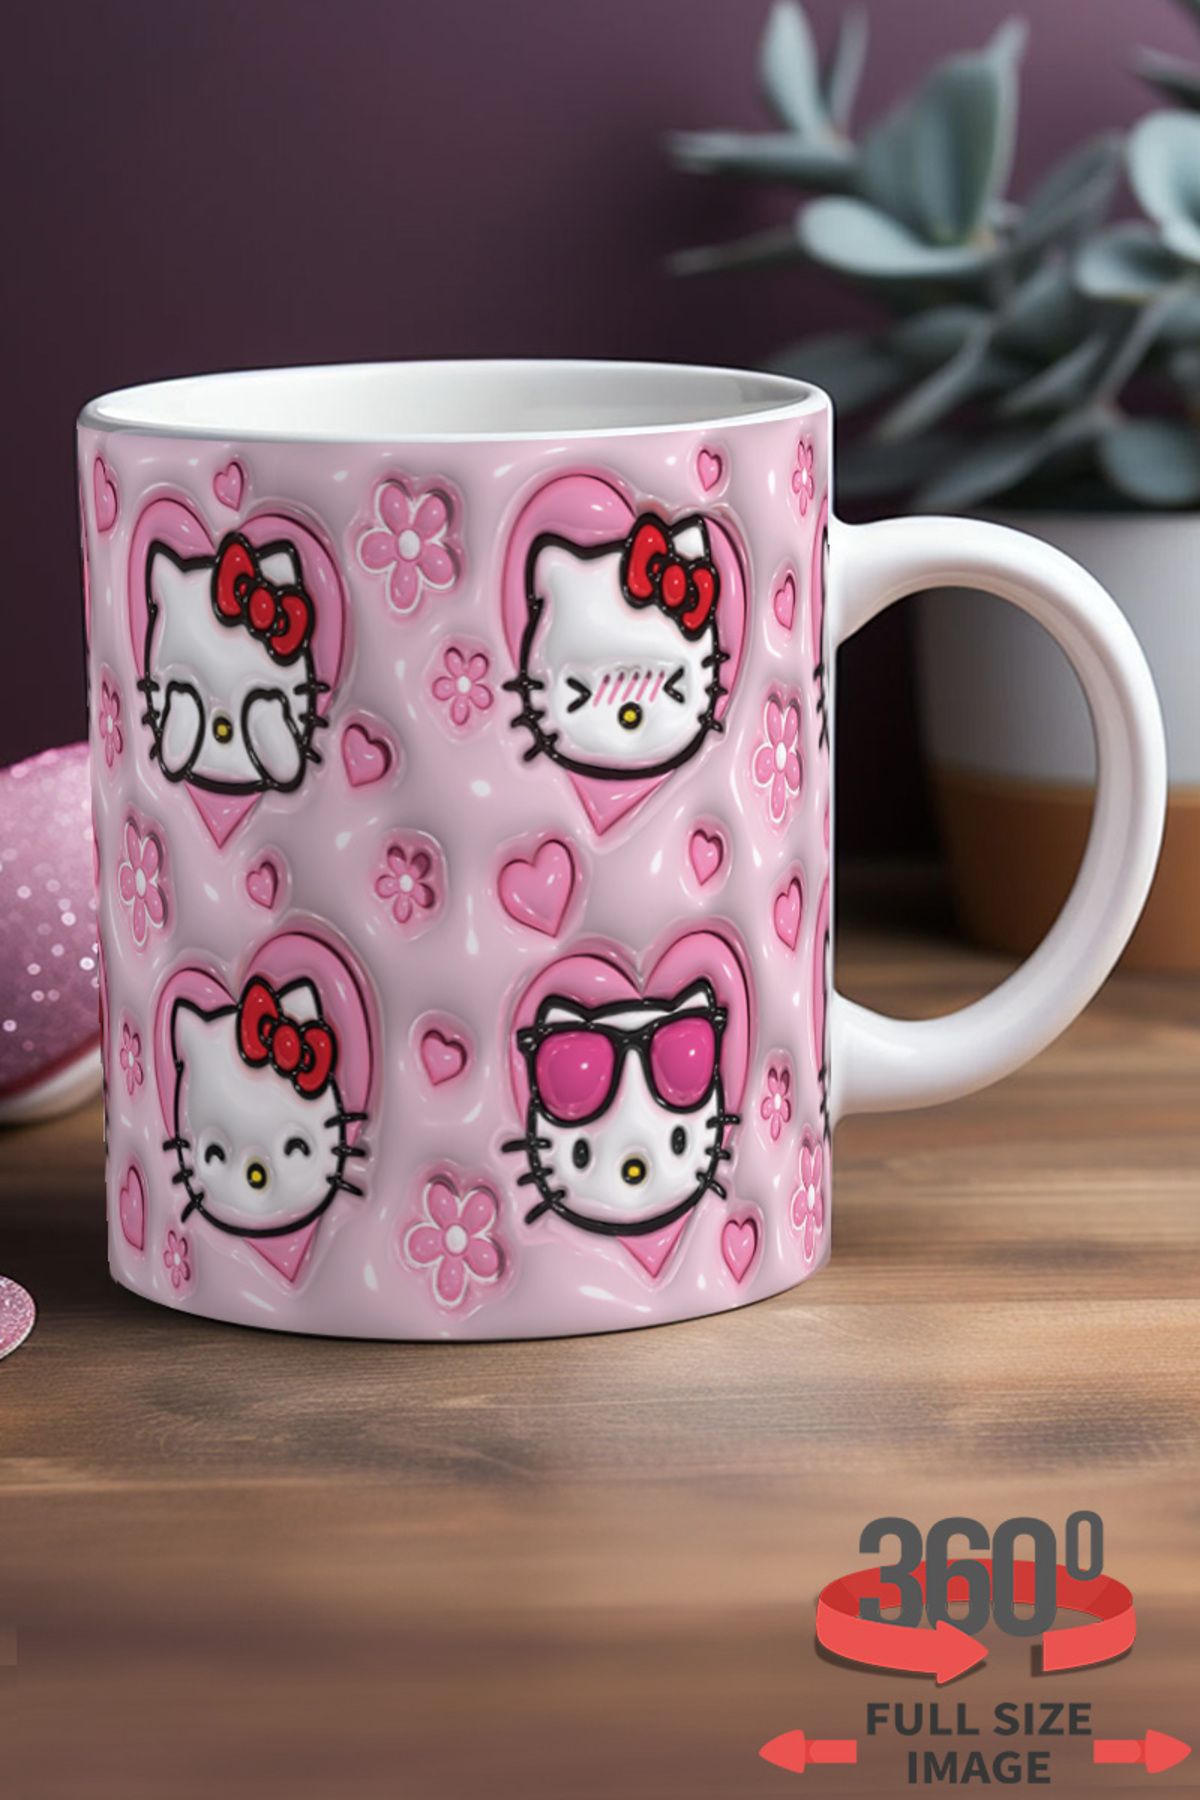 dijital moda tasarım 3d Kabartma Desenli Inflated "hello Kitty" Kişiye Özel Hediyelik Porselen Kupa Bardak